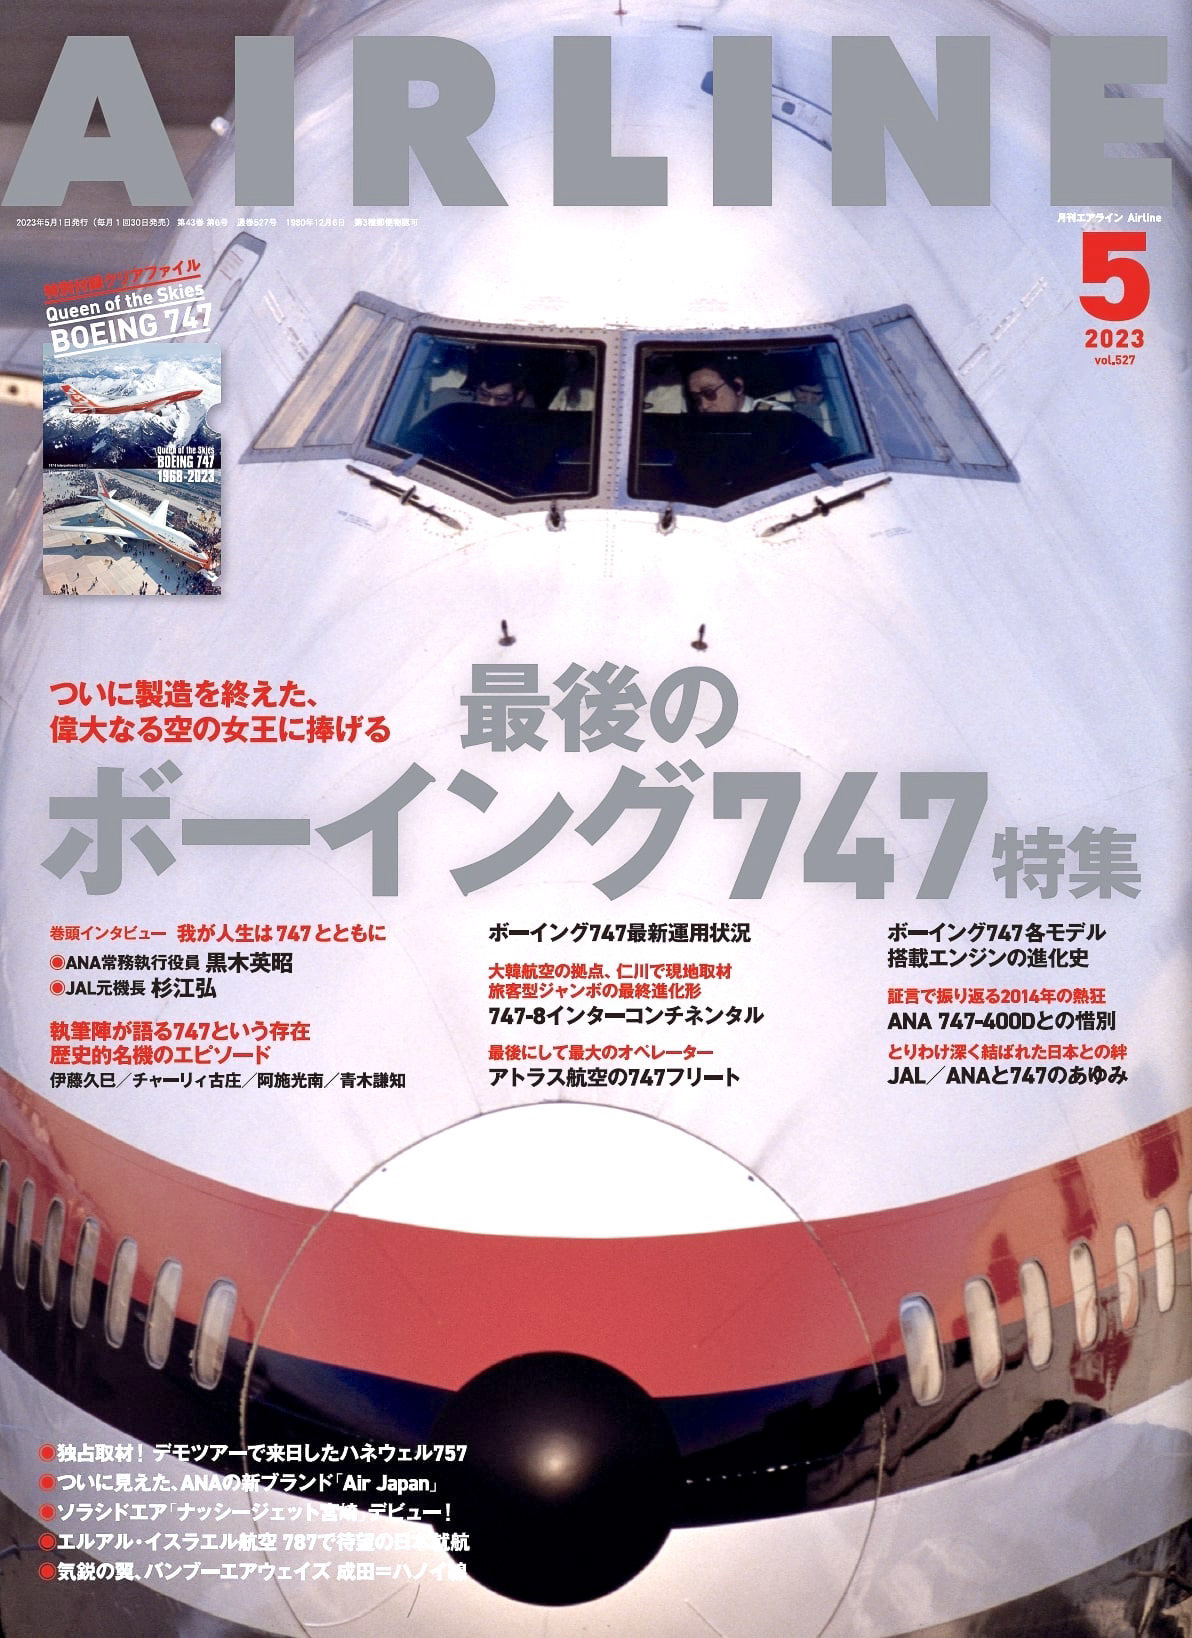 月刊エアライン2023年5月号、製造を完了した「最後のボーイング747特集